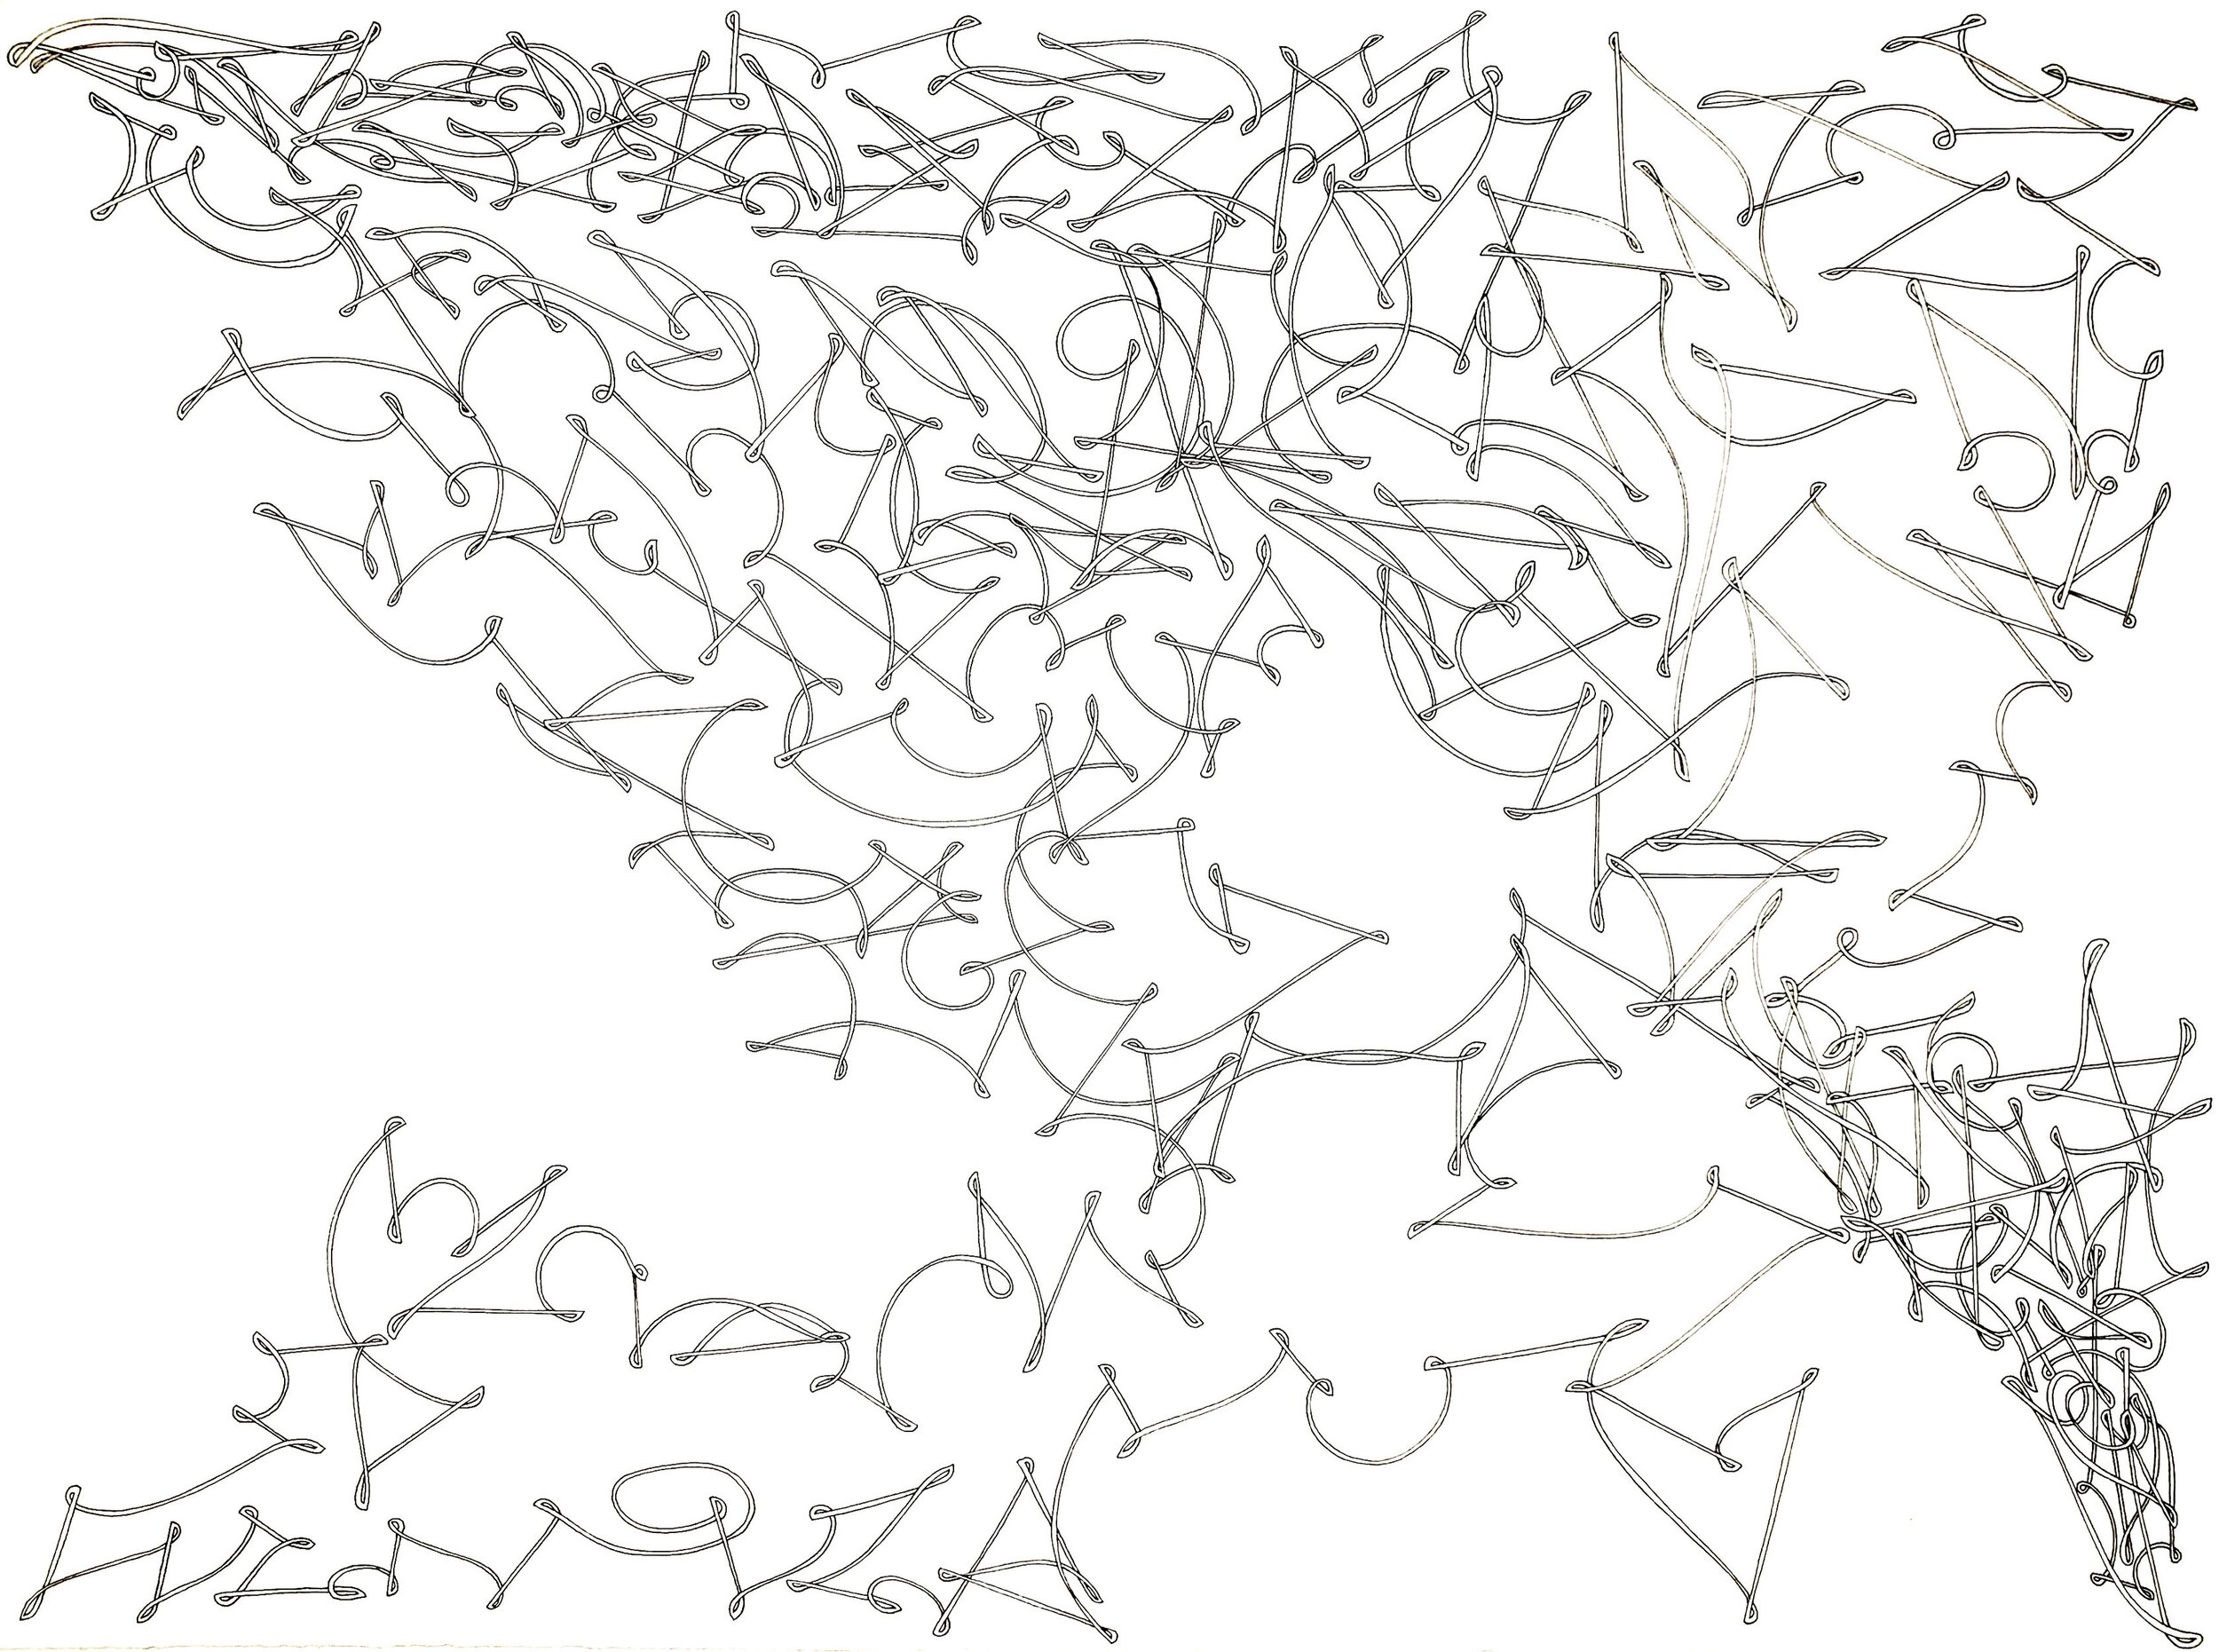 Random Schematic, ink on paper, 15" x 11.25"